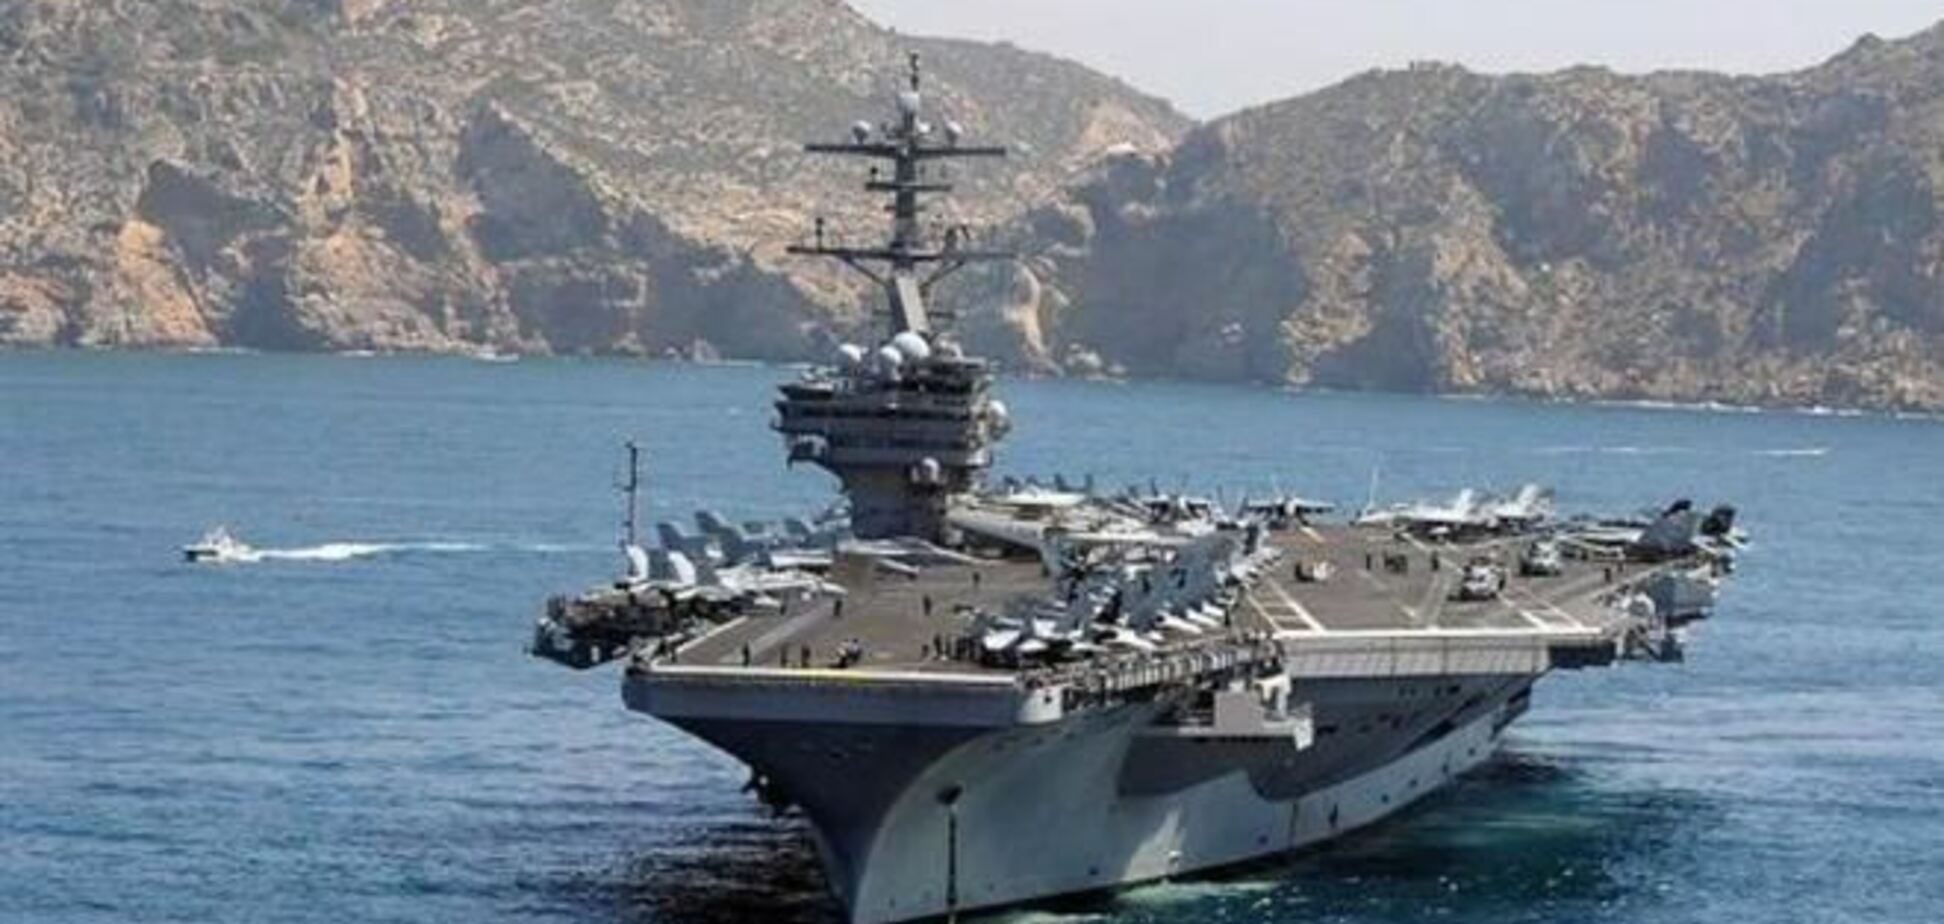 Американские военные корабли продолжат учения в Средиземном море